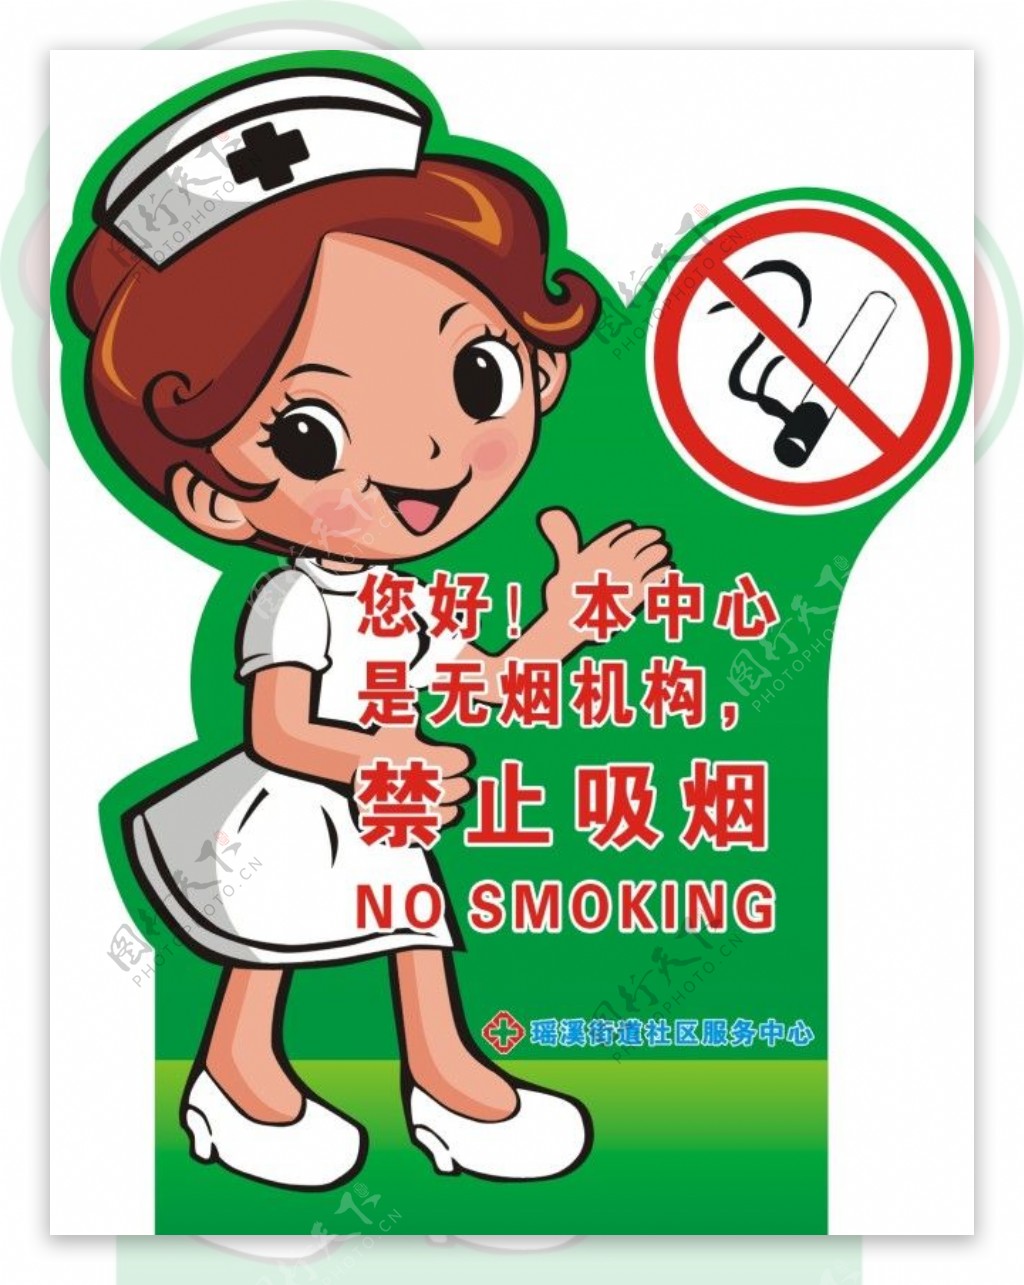 医院禁止吸烟牌子